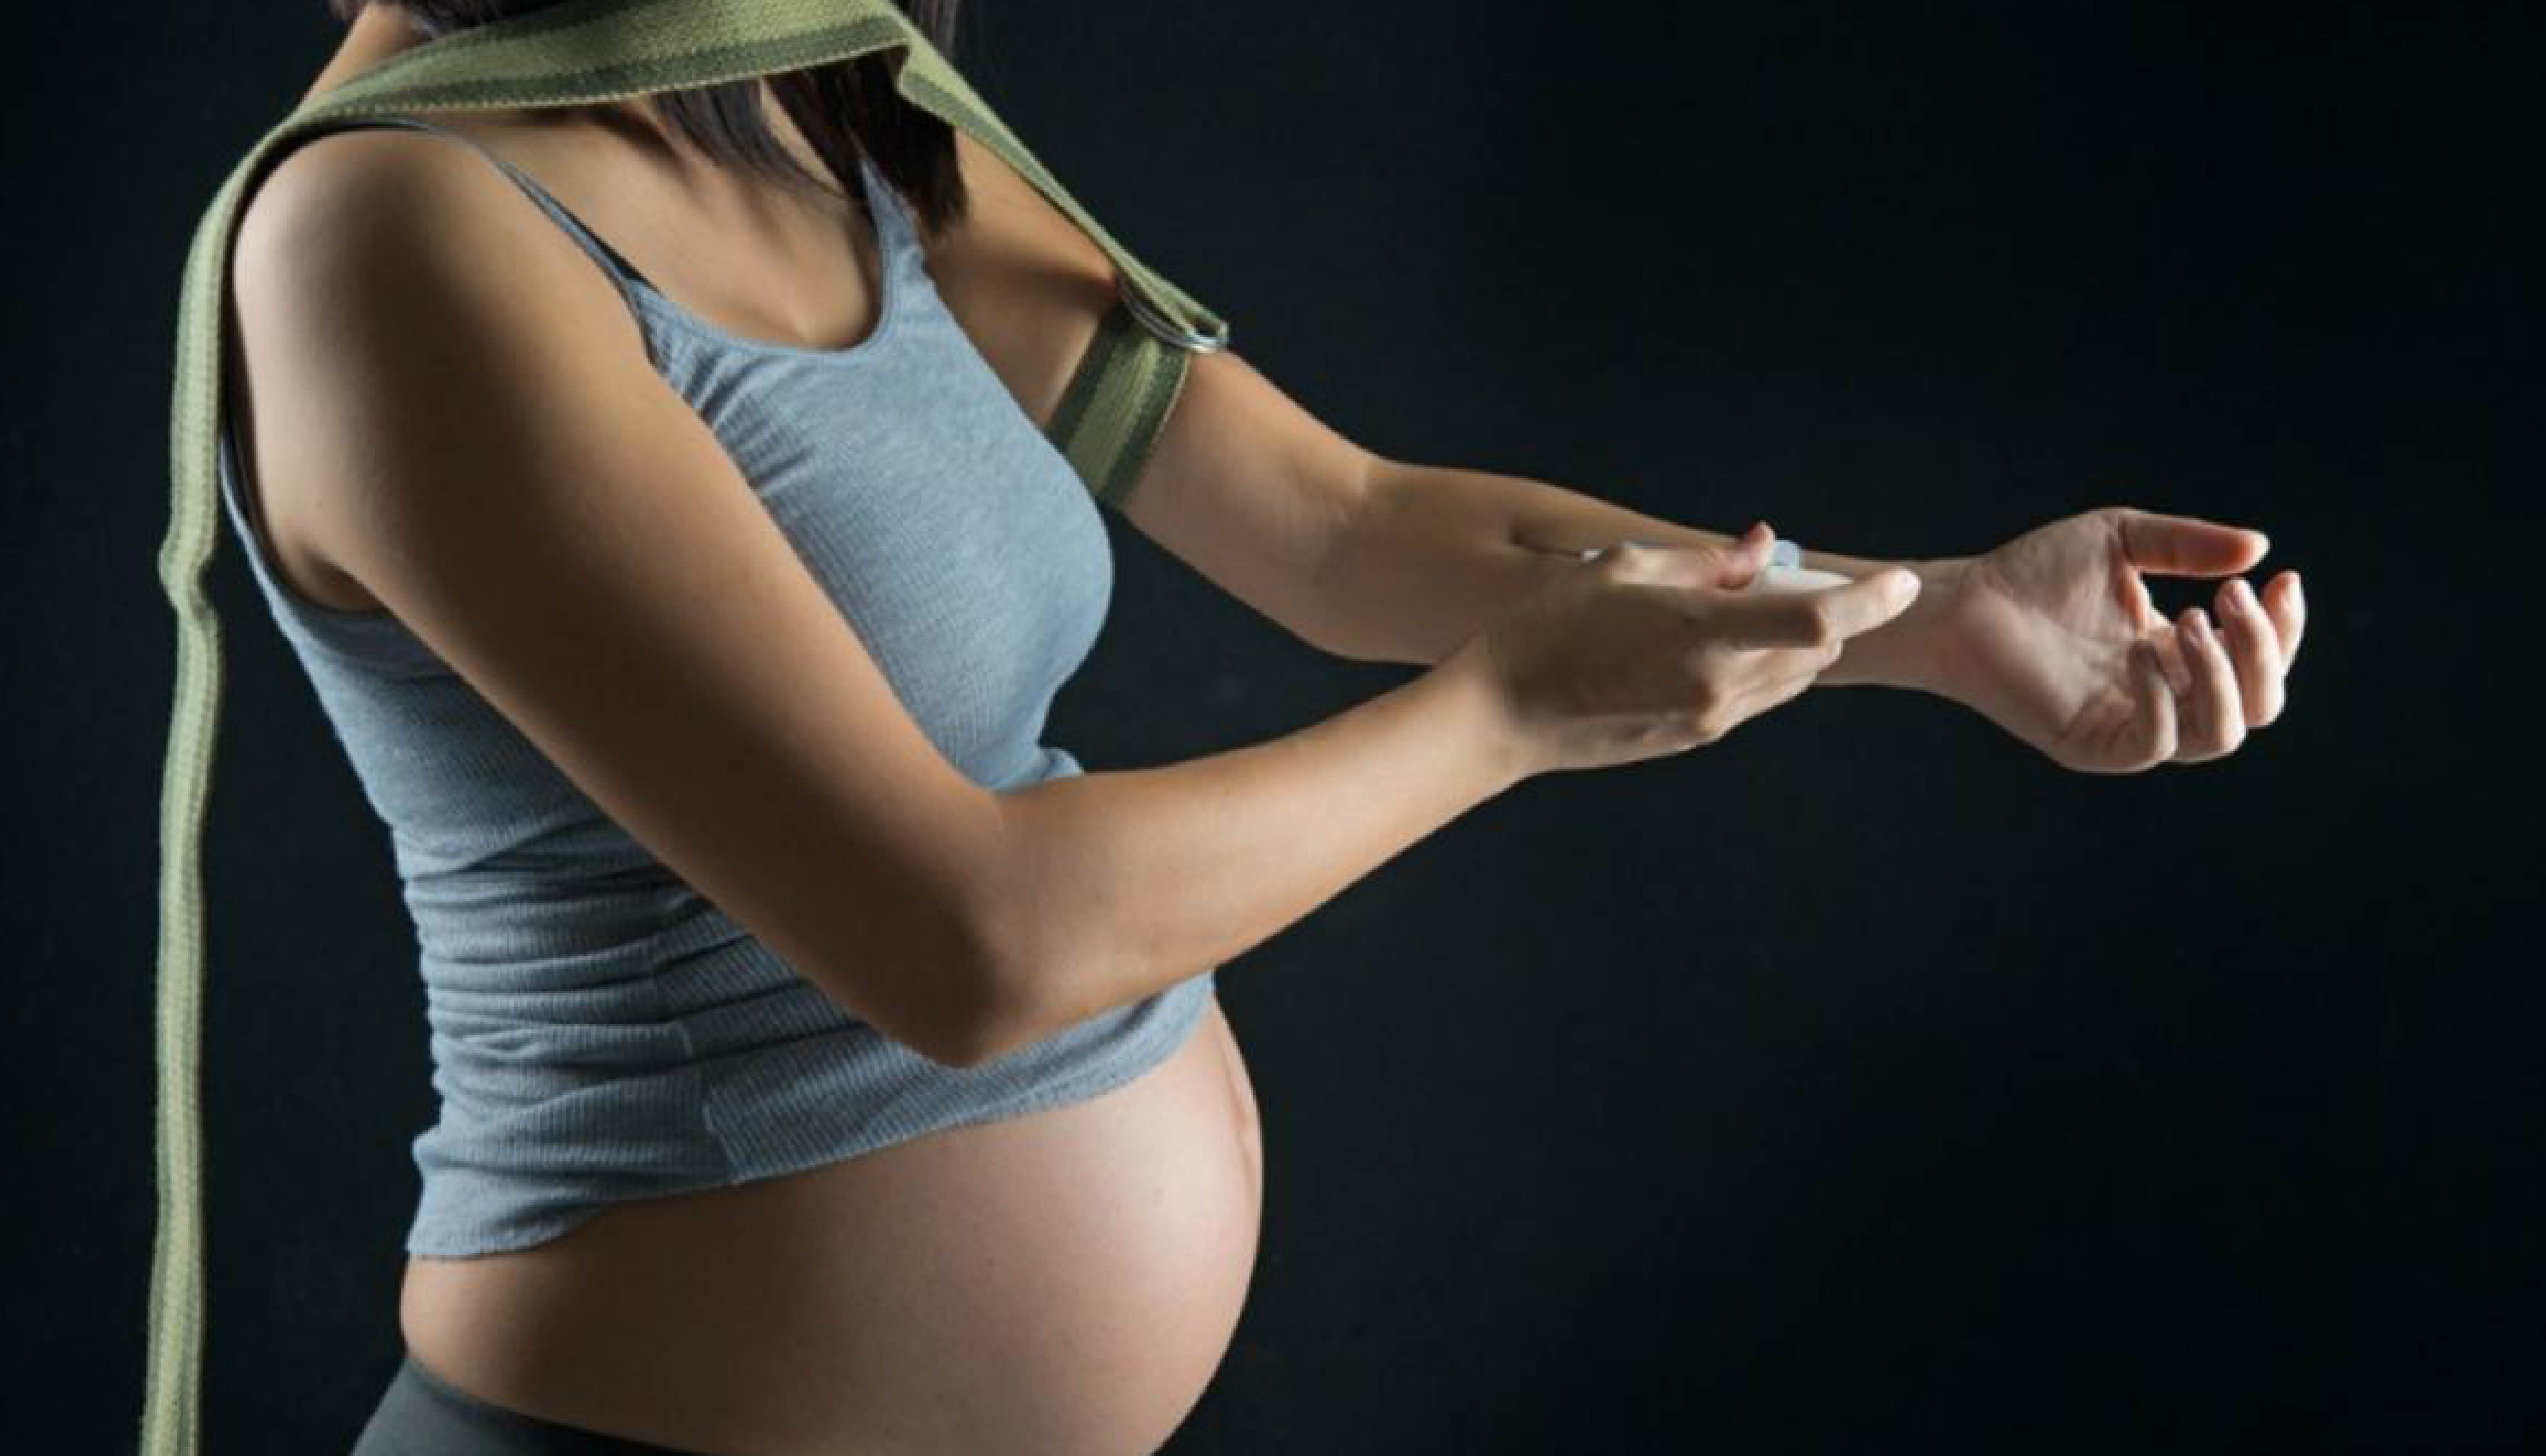 La dependencia de la heroína en la mujer y el embarazo